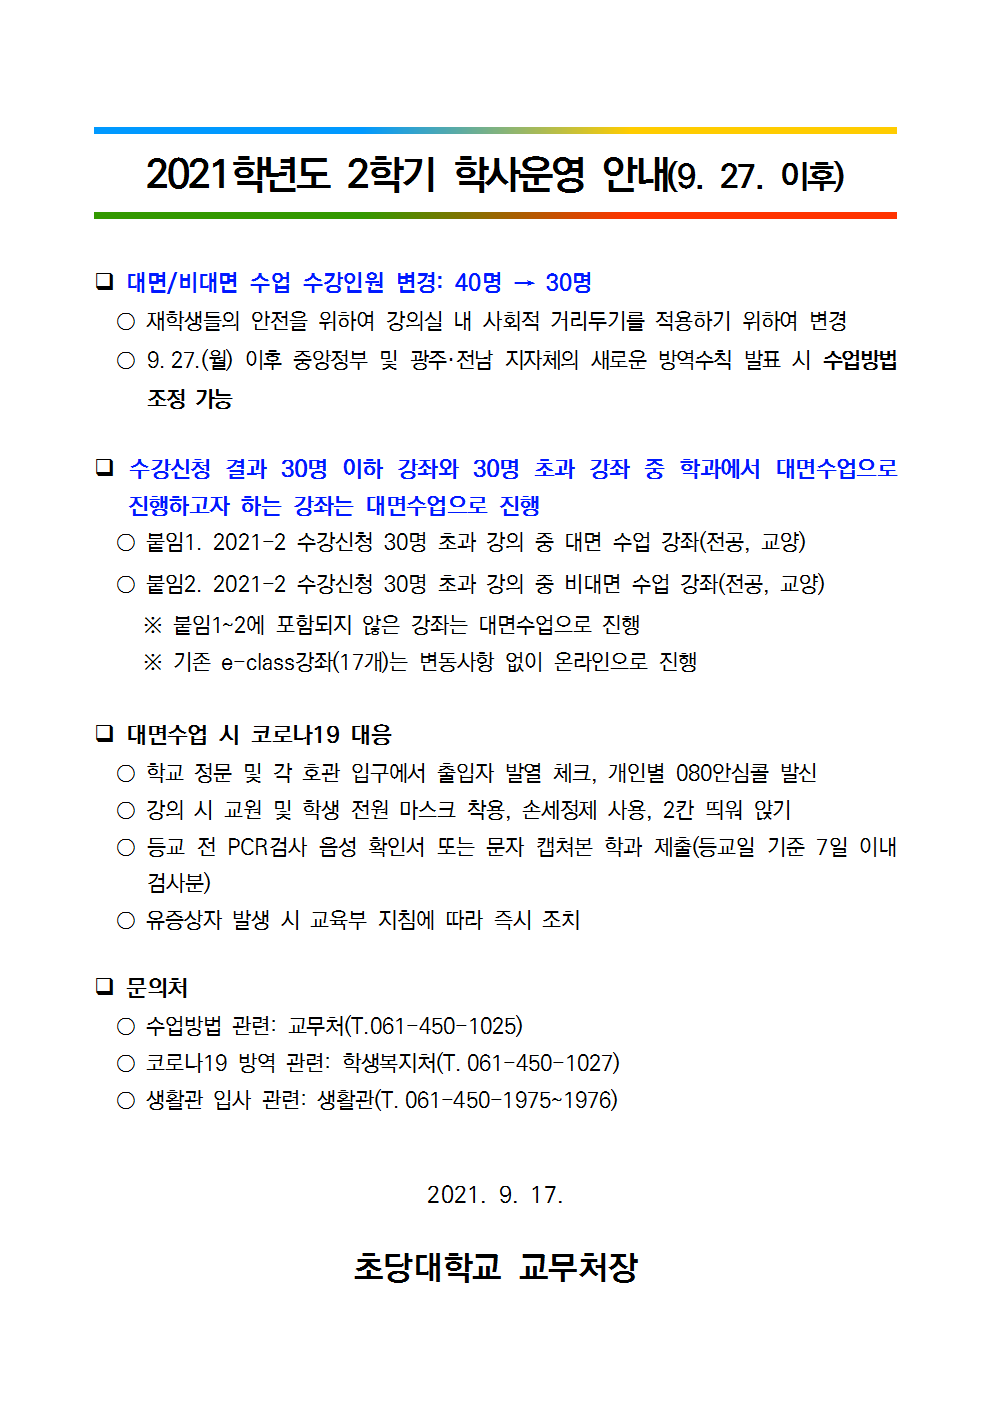 2021학년도 2학기 학사운영 안내(9. 27. 이후).png